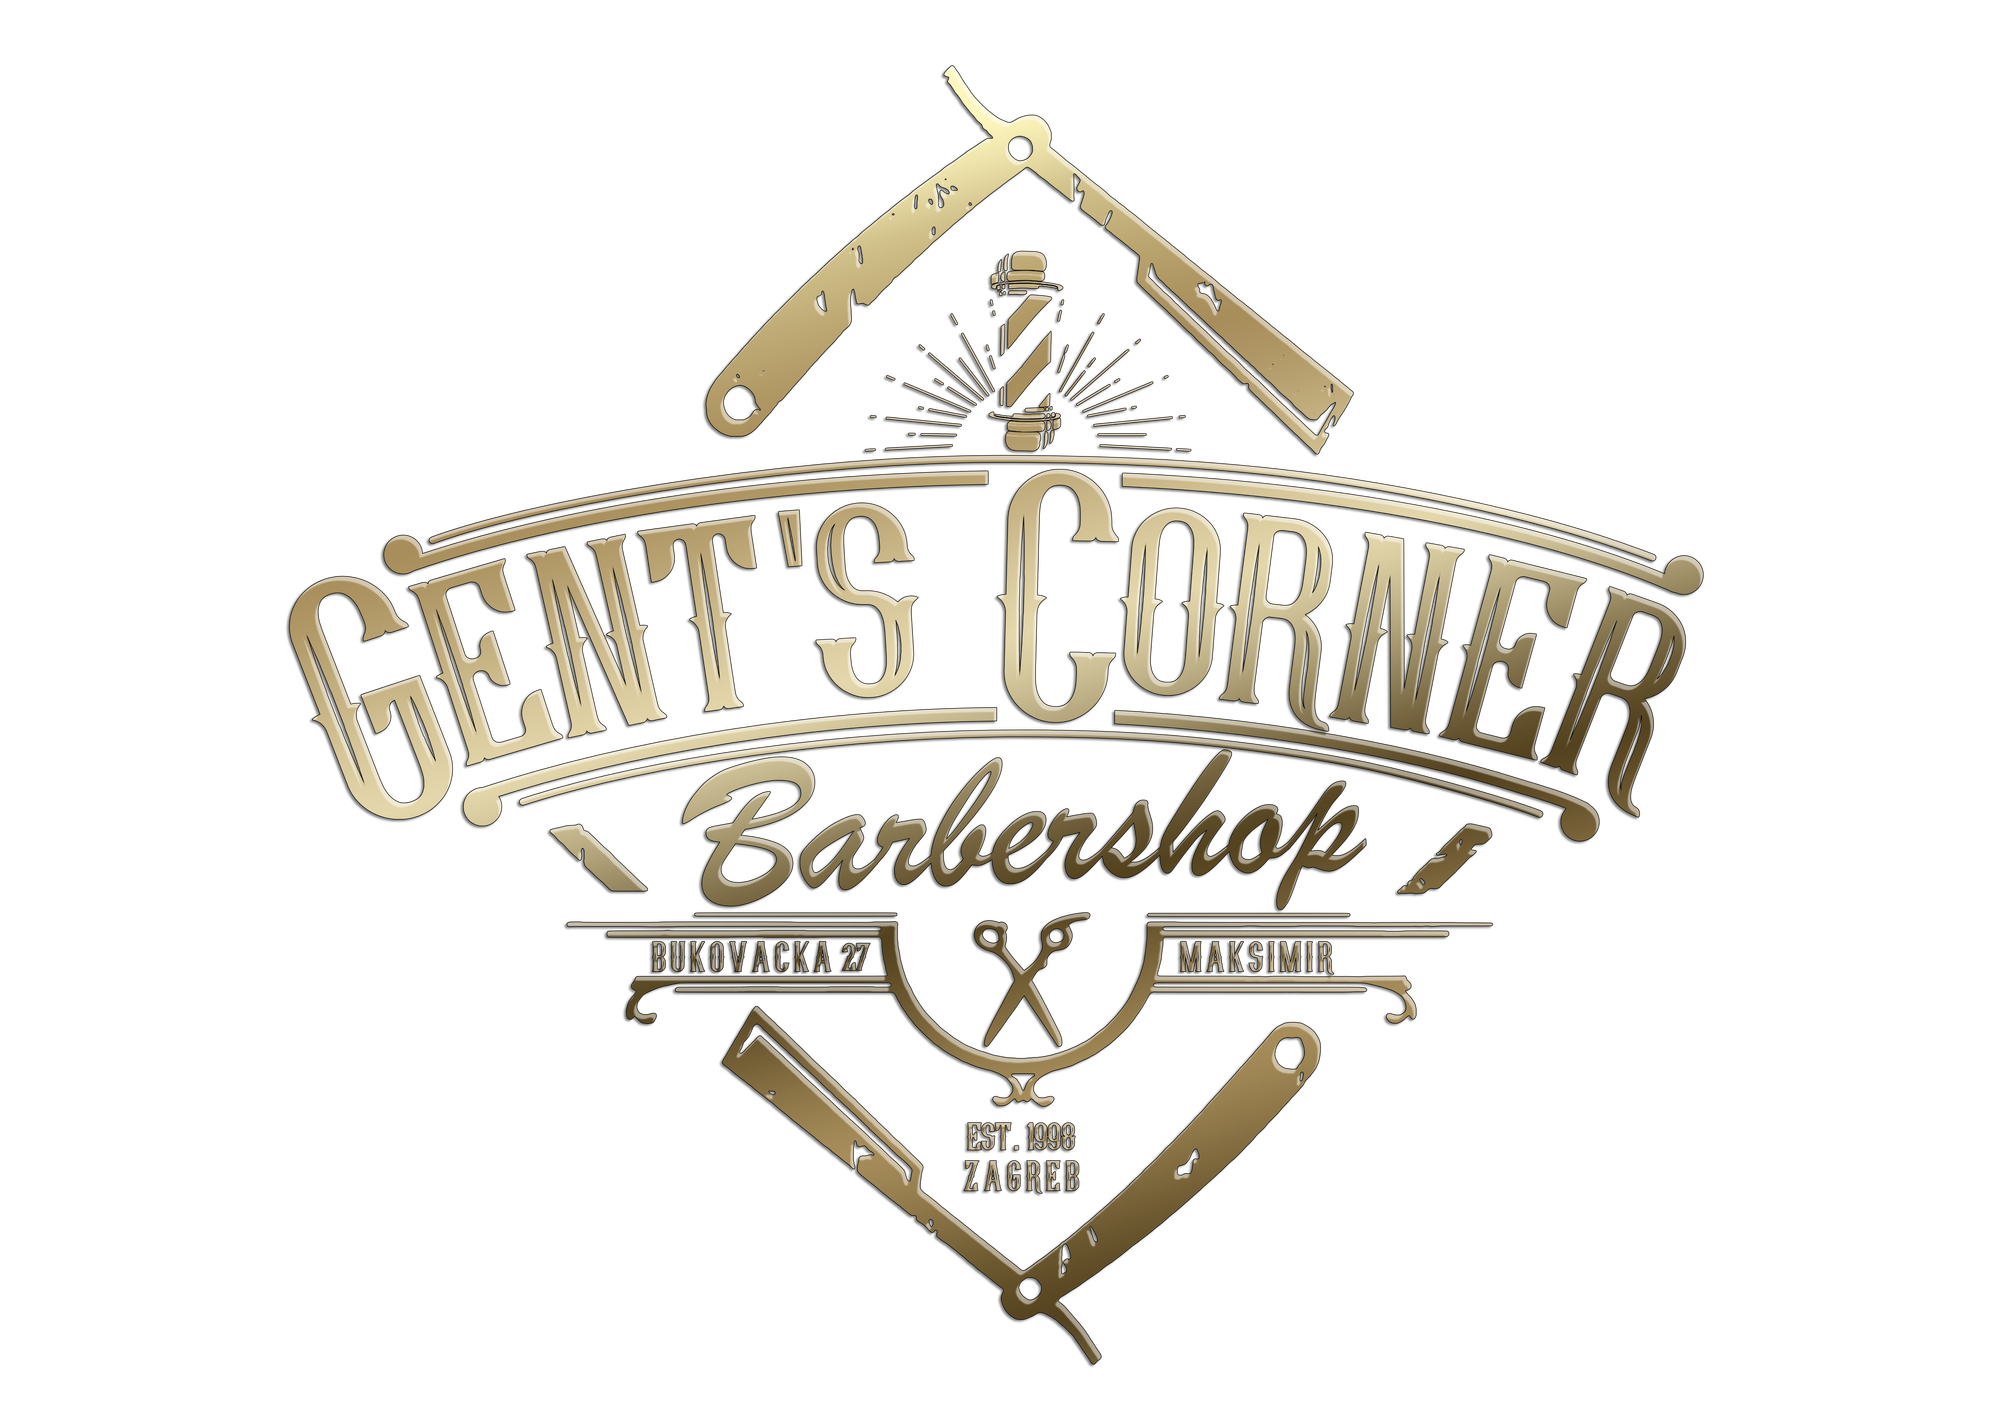 Gents Corner Barbershop